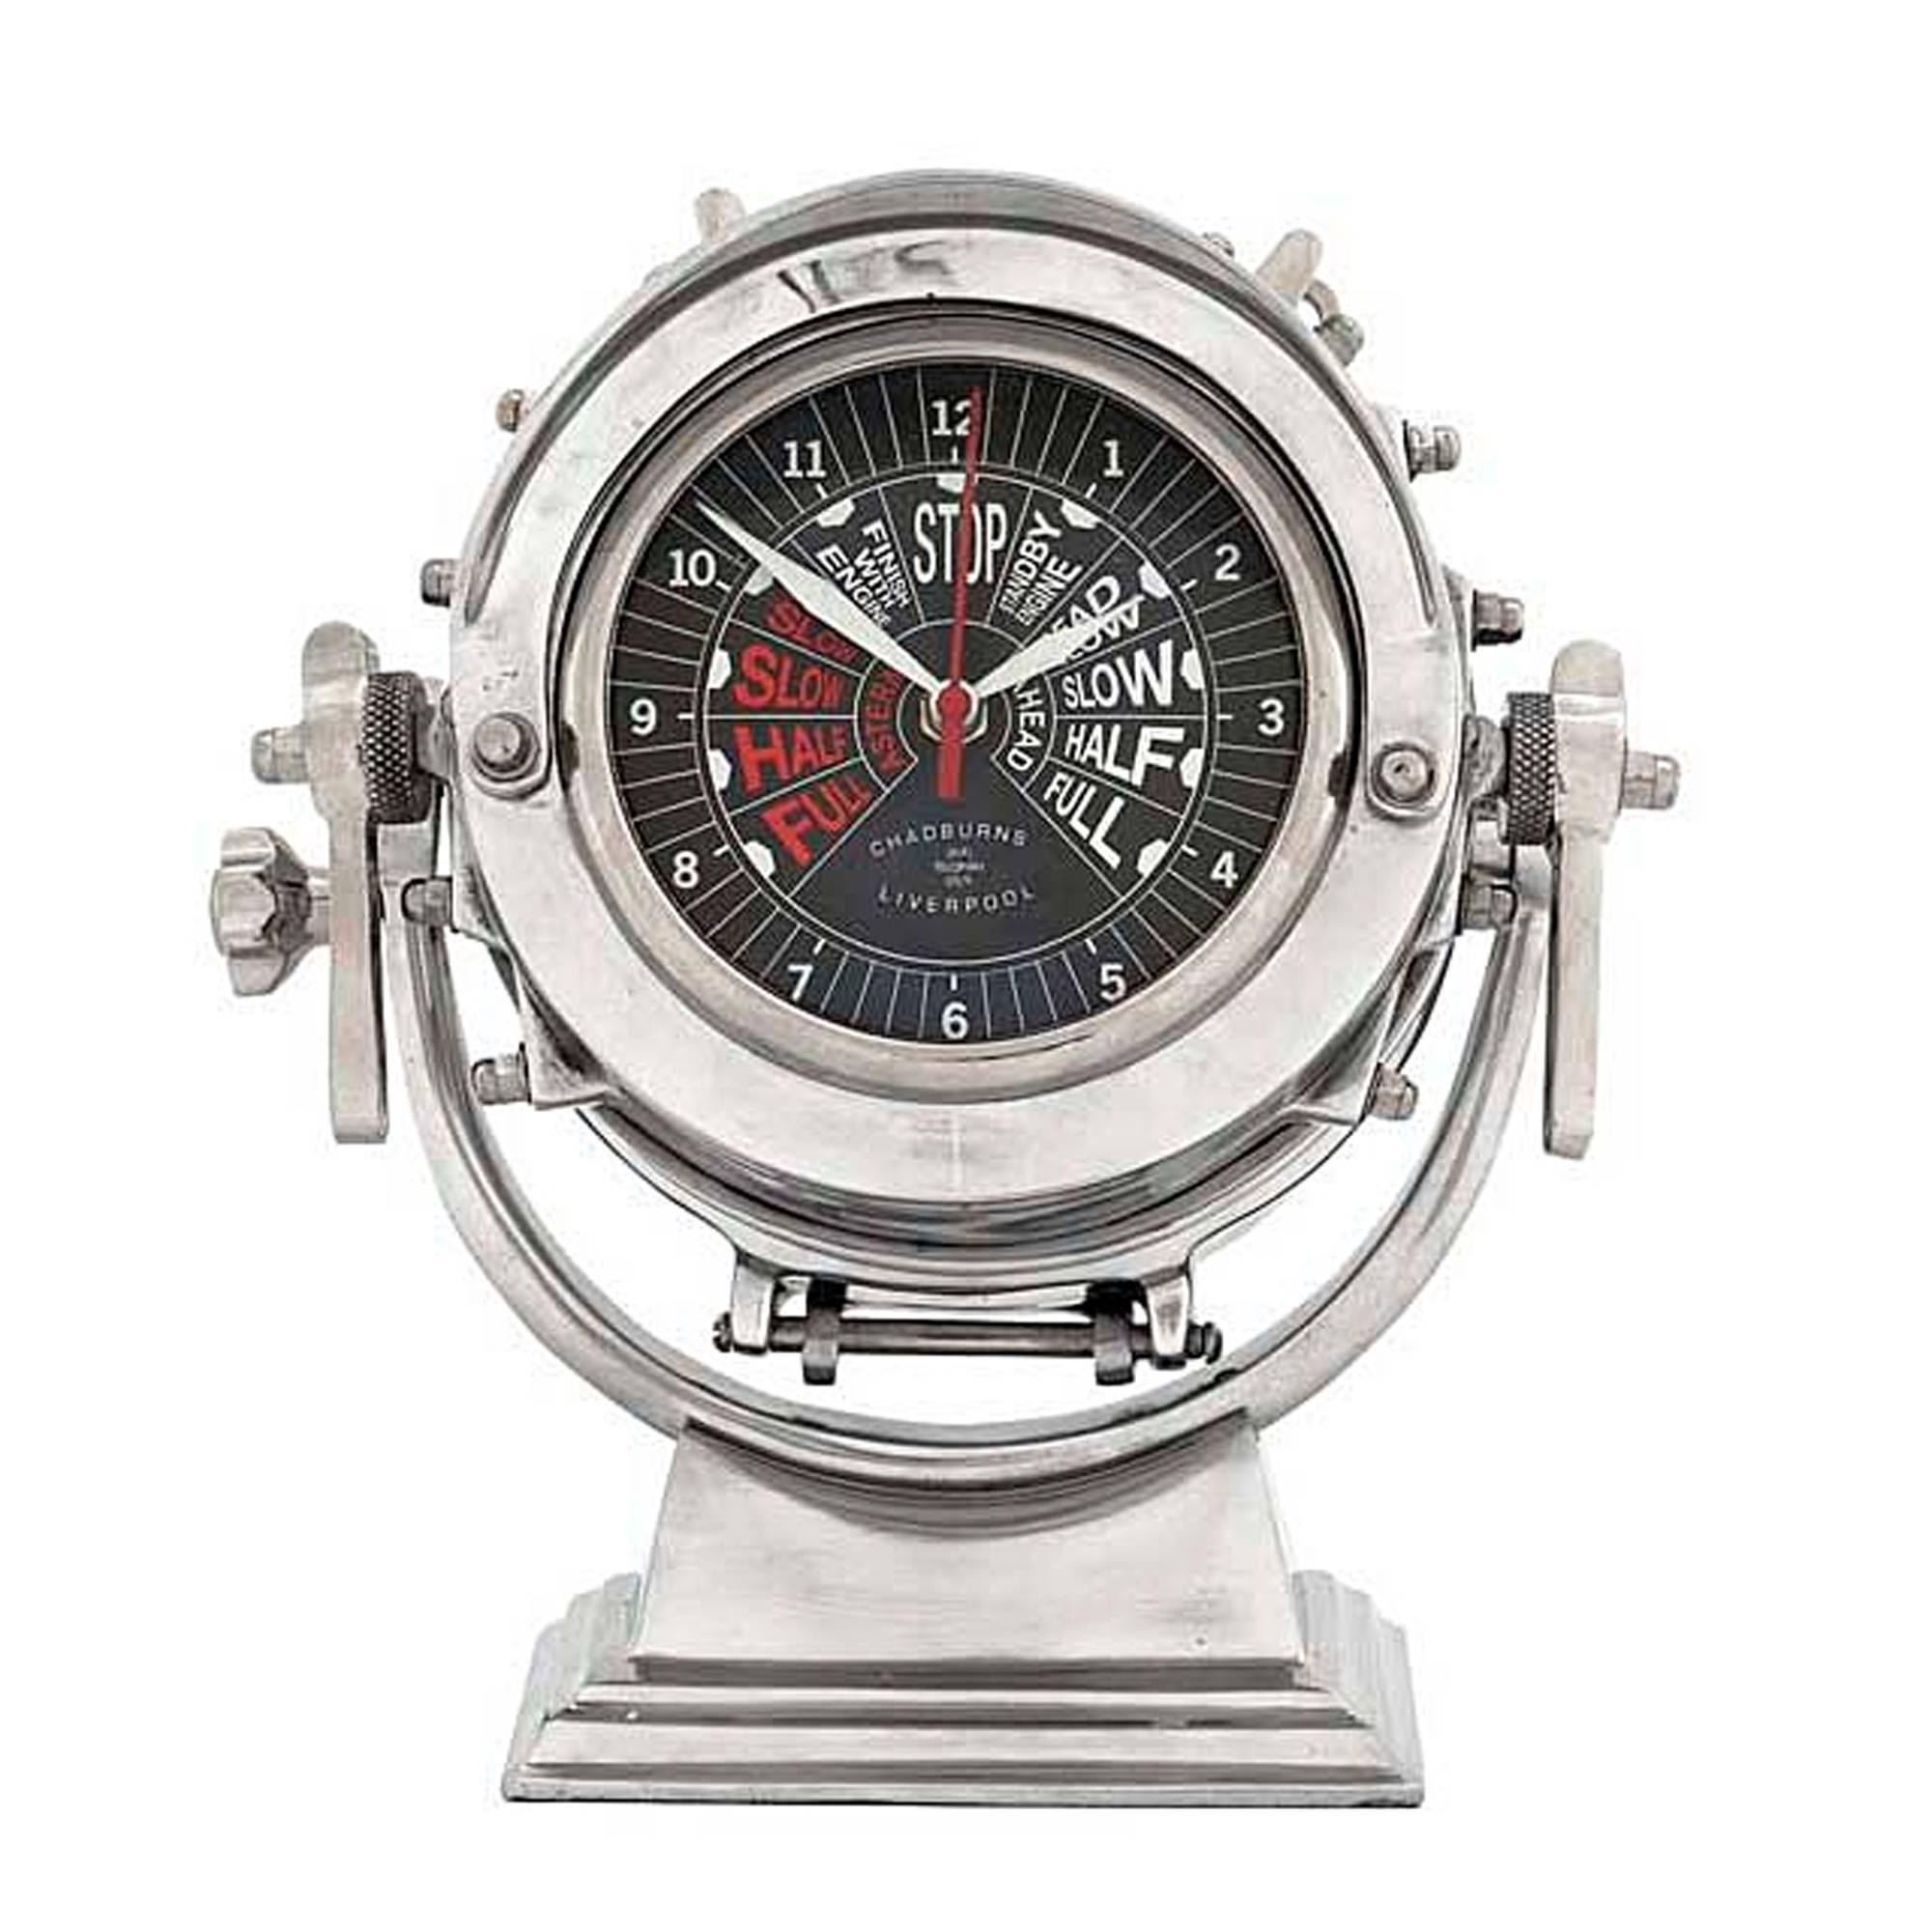 Uhr Navy aus poliertem Aluminium, Eisen,
Messing und rostfreiem Stahl.
    